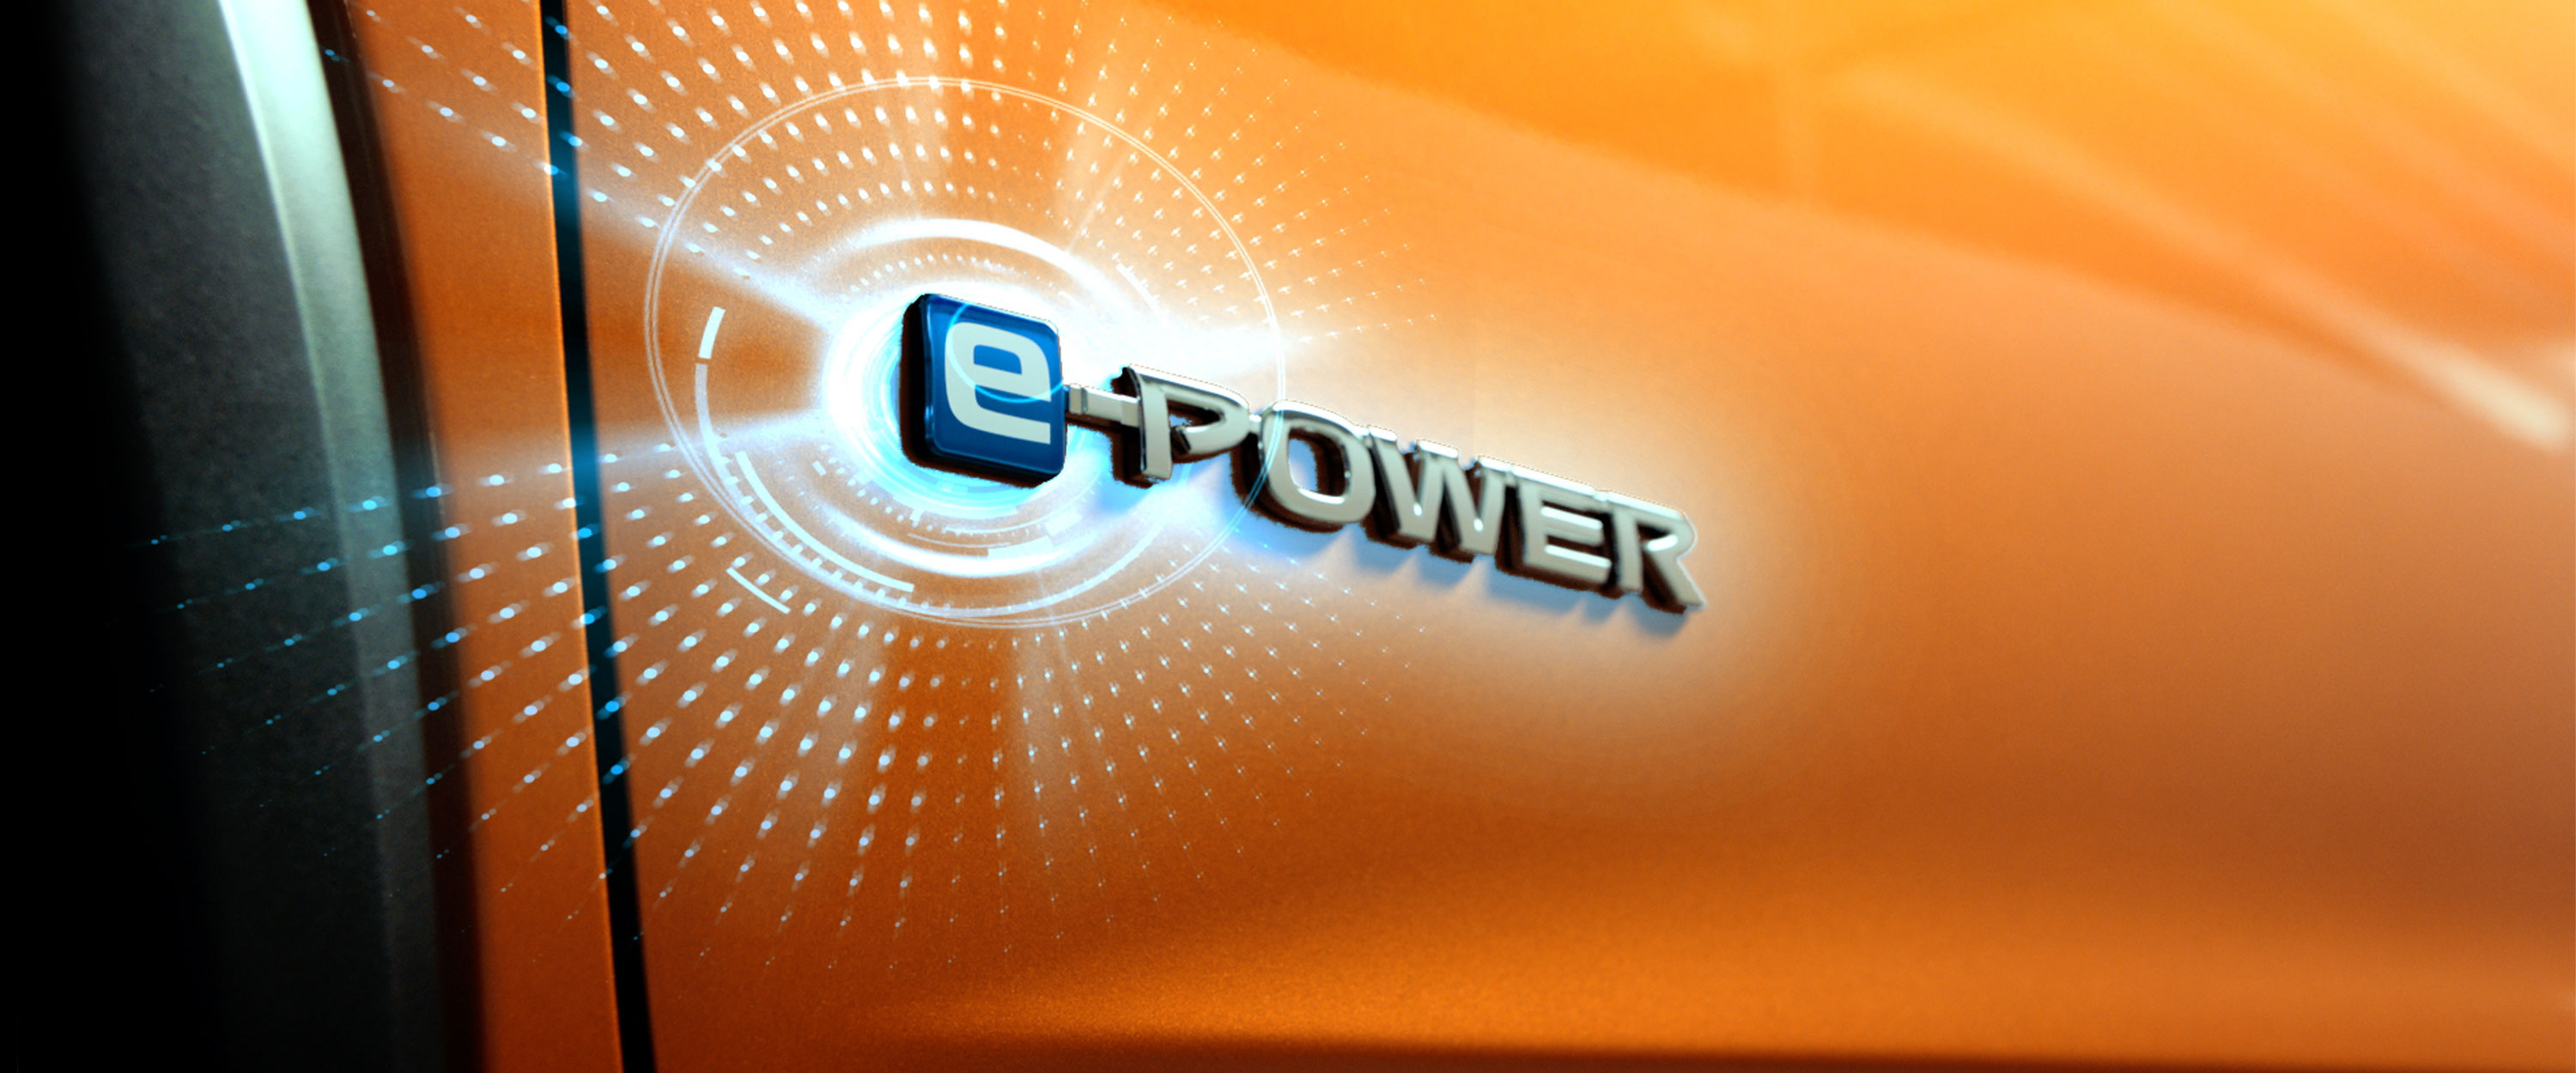 Logo de e-power en carrocería de Nissan Kicks